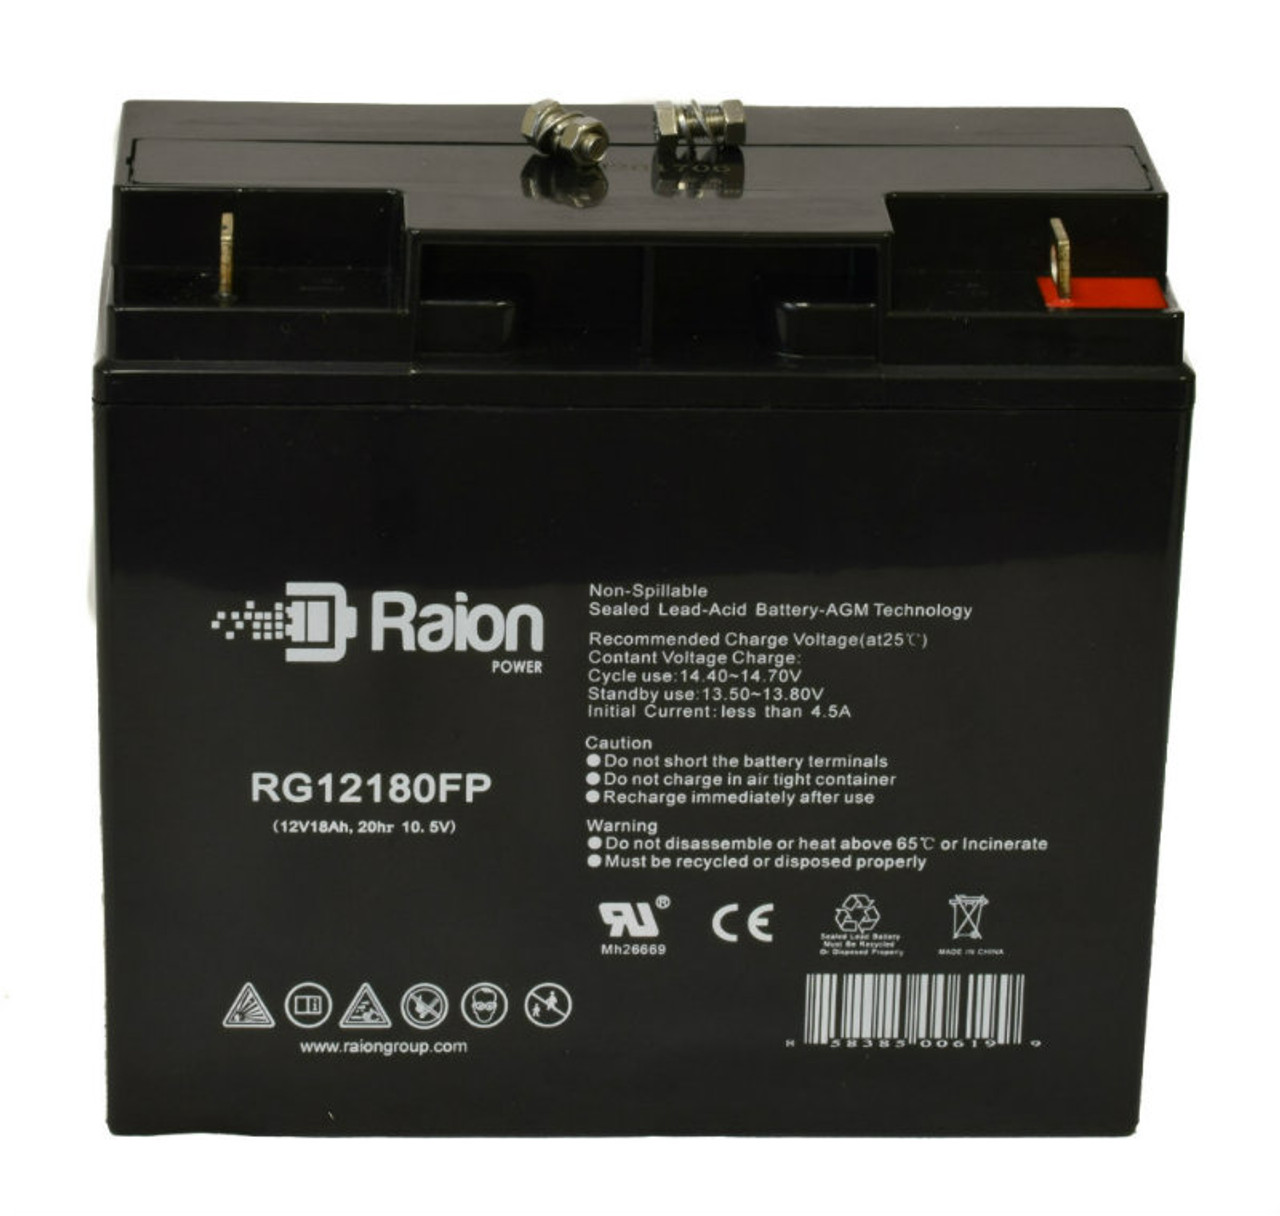 Raion Power RG12180FP 12V 18Ah Lead Acid Battery for NEATA NT12-17